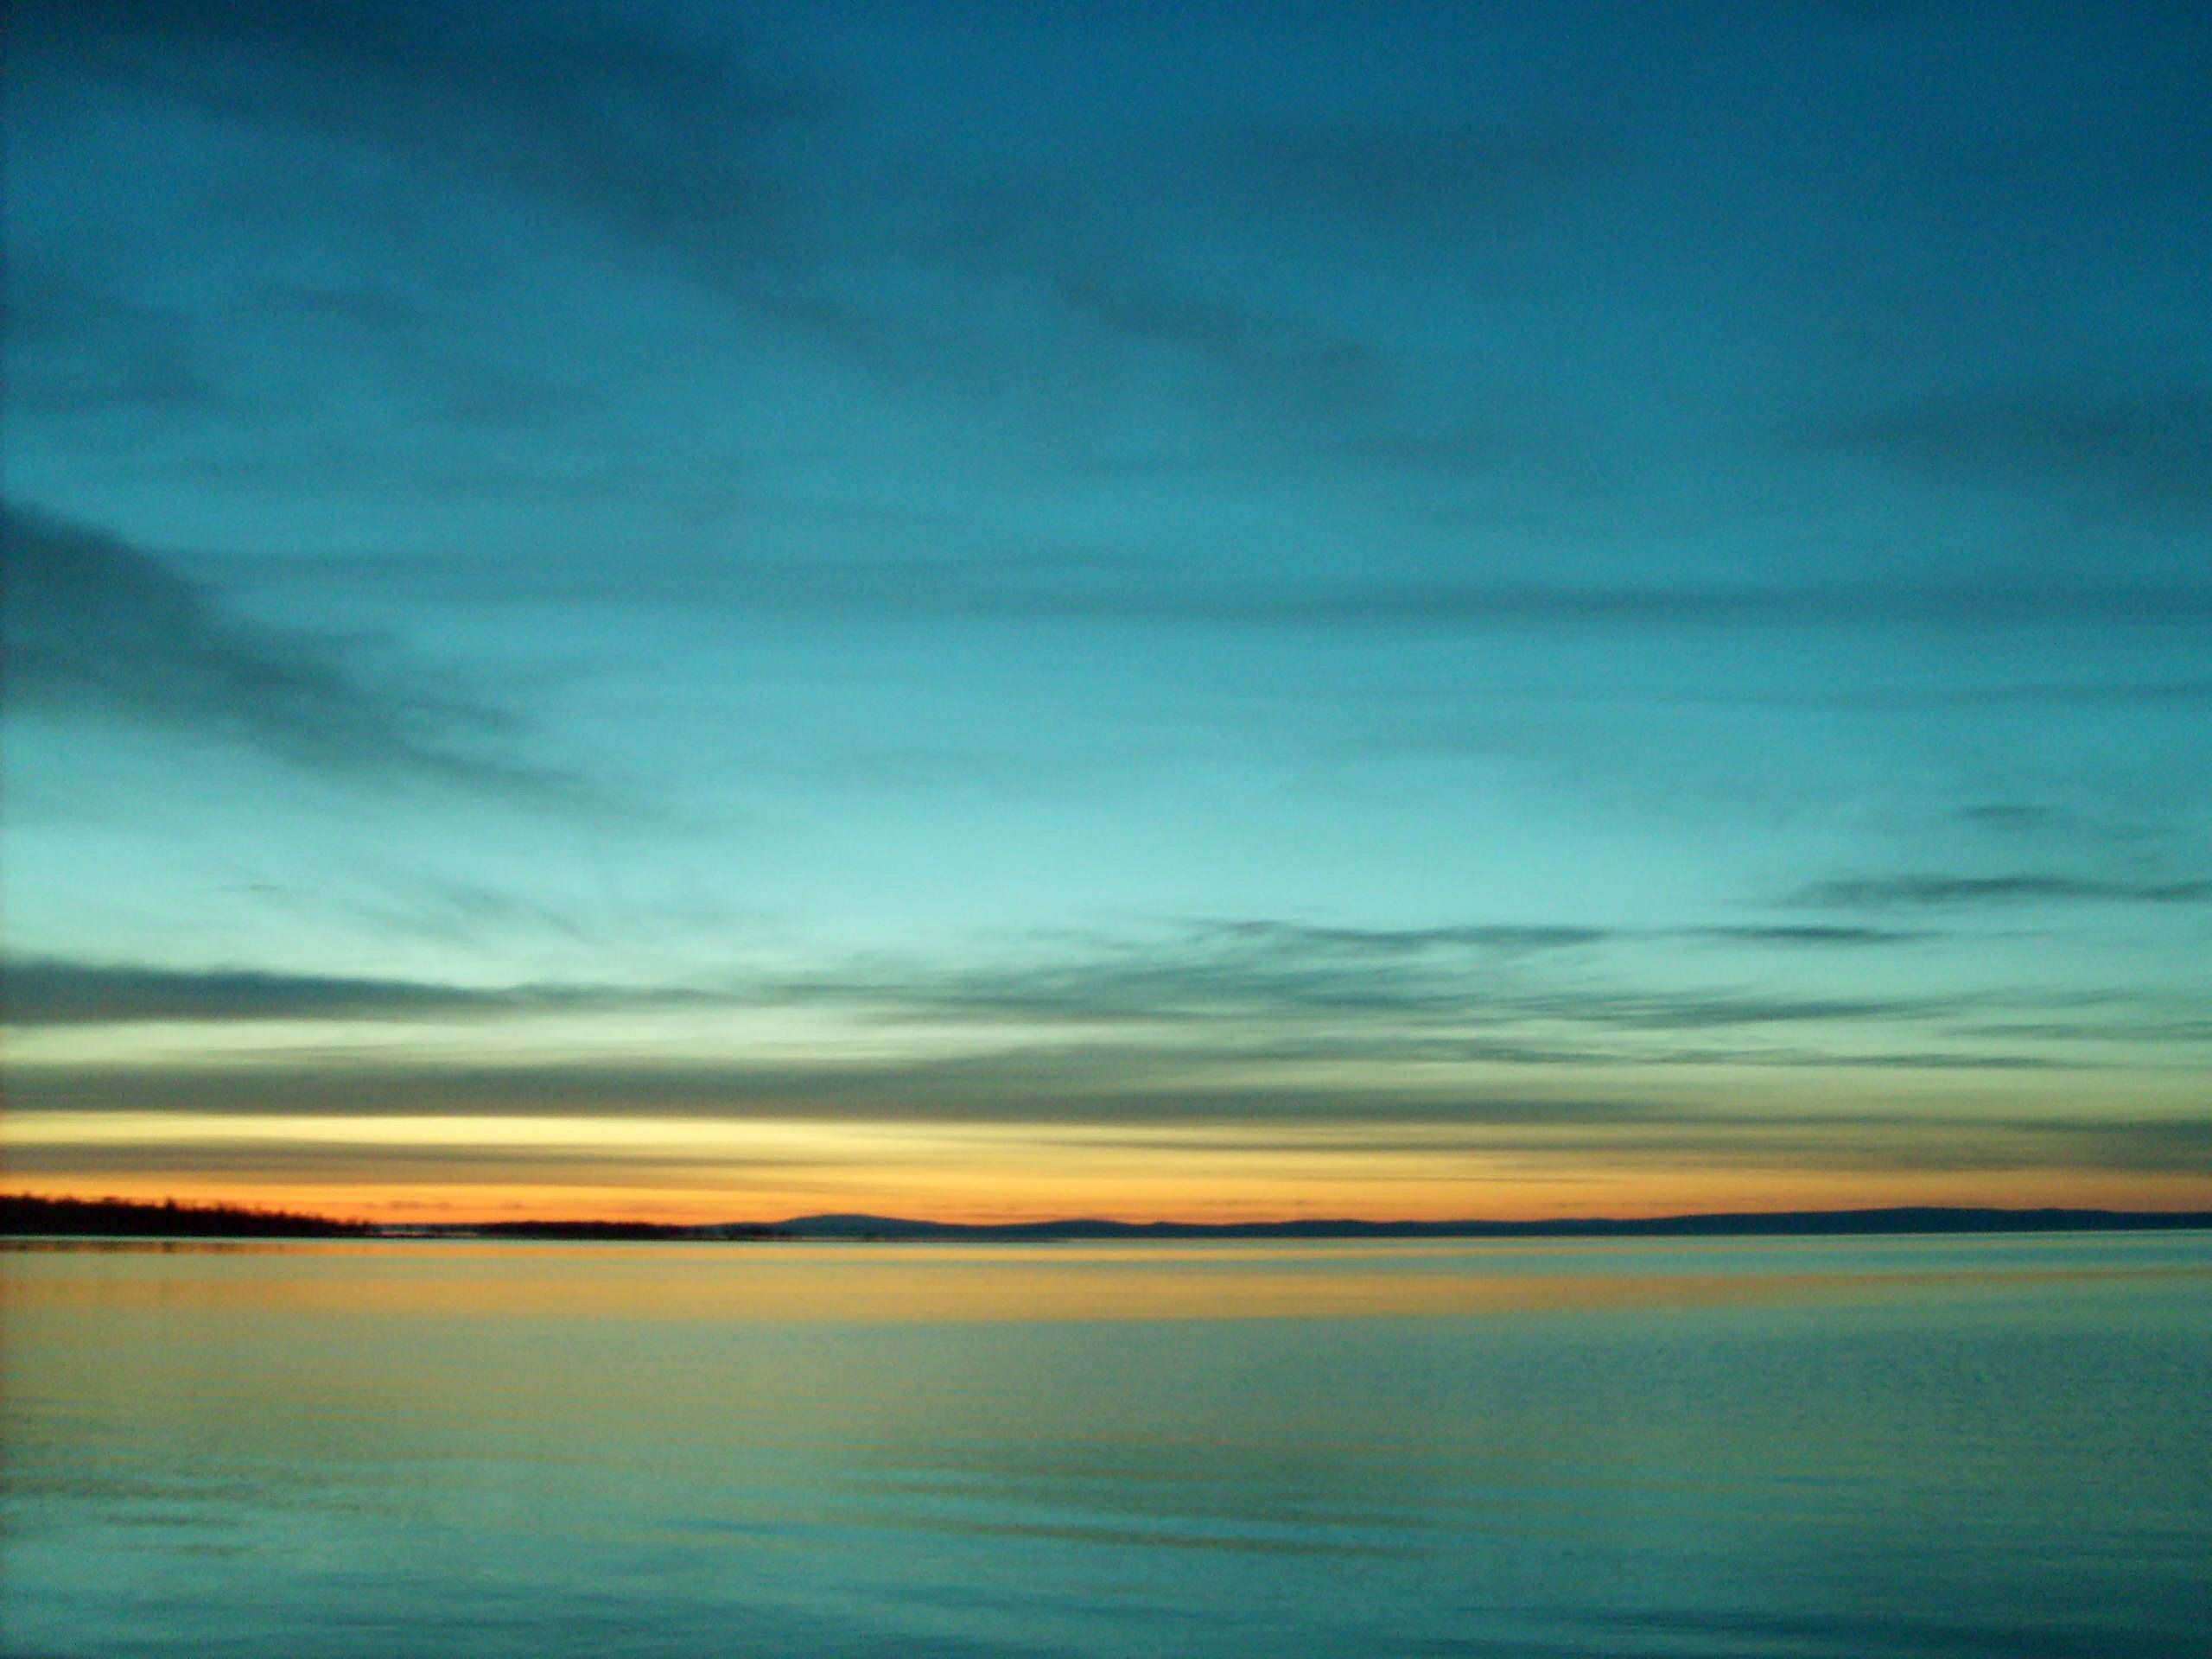 Free Image: Blue Sunset On The Lake | Libreshot Public Domain Photos